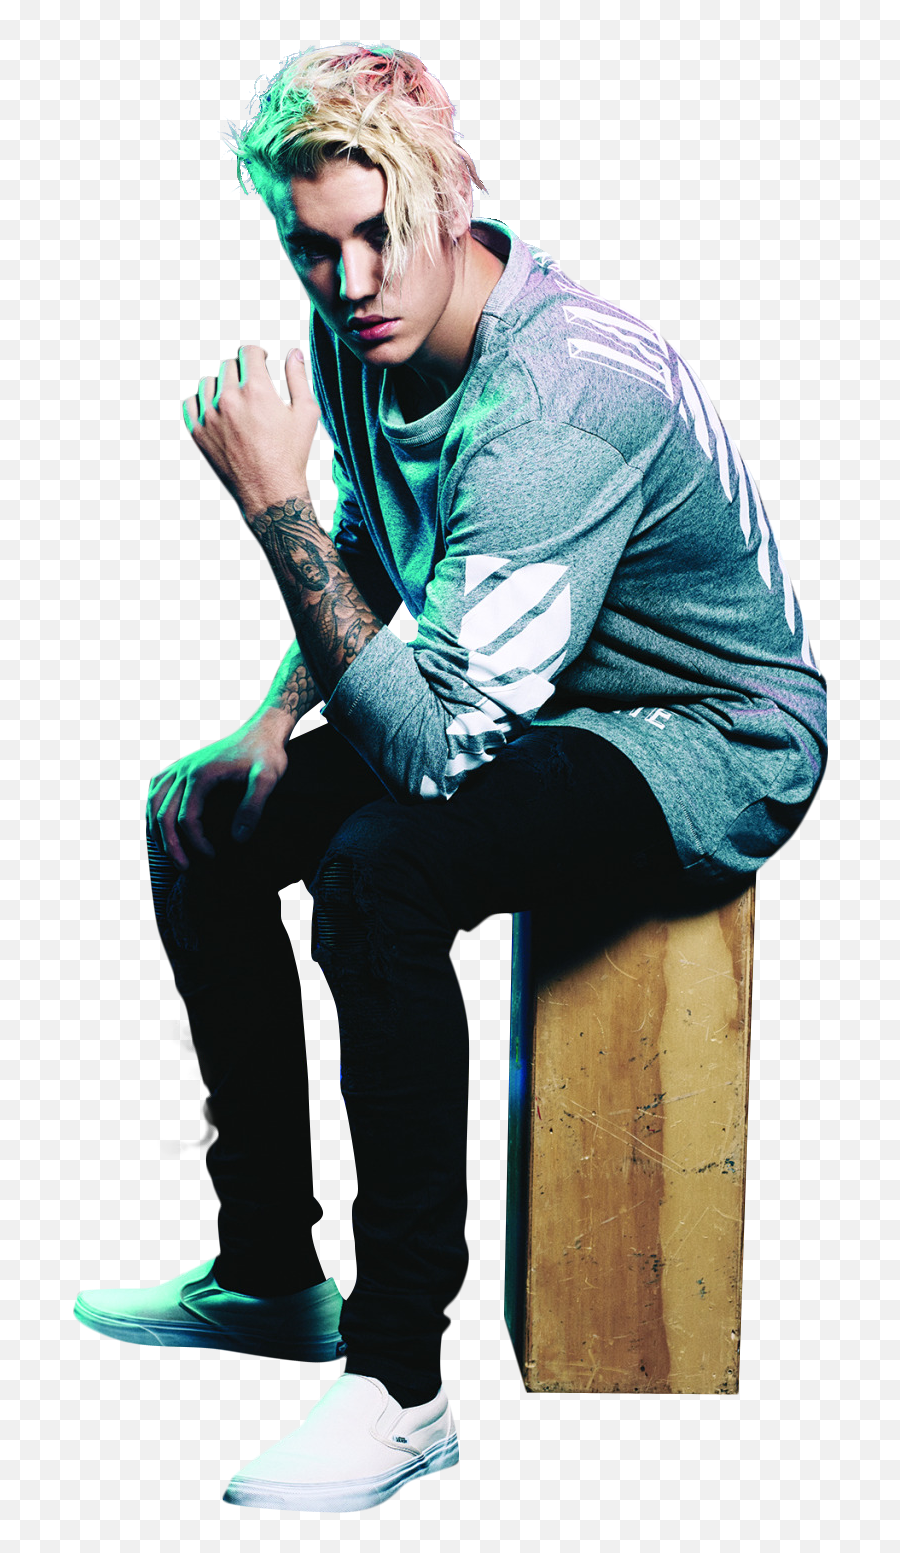 Justin Bieber Green Light Png Image For - Justin Bieber Hd Wallpaper  2020,Green Light Png - free transparent png images 